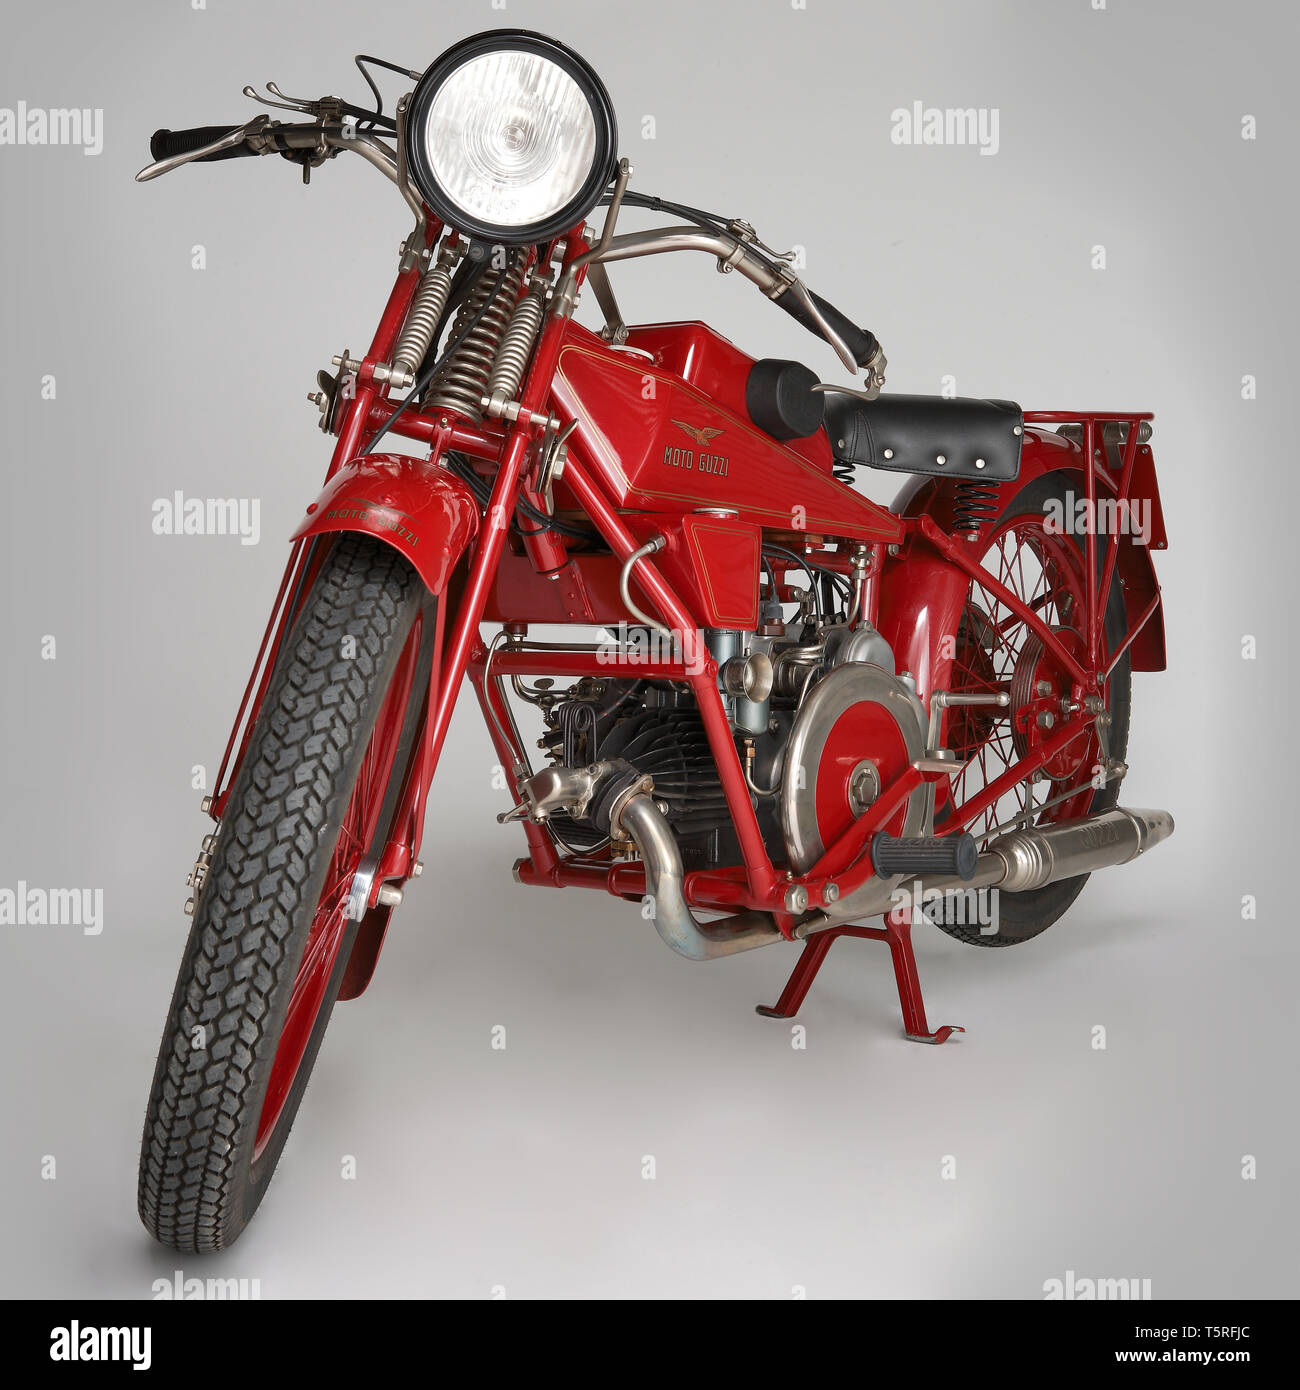 Moto d'epoca Guzzi Sport 14. Marca: Moto Guzzi modello: Sport 14 nazione: Italia - mandello Lario Anno: 1929 condizioni: restaurata cil Stockfoto